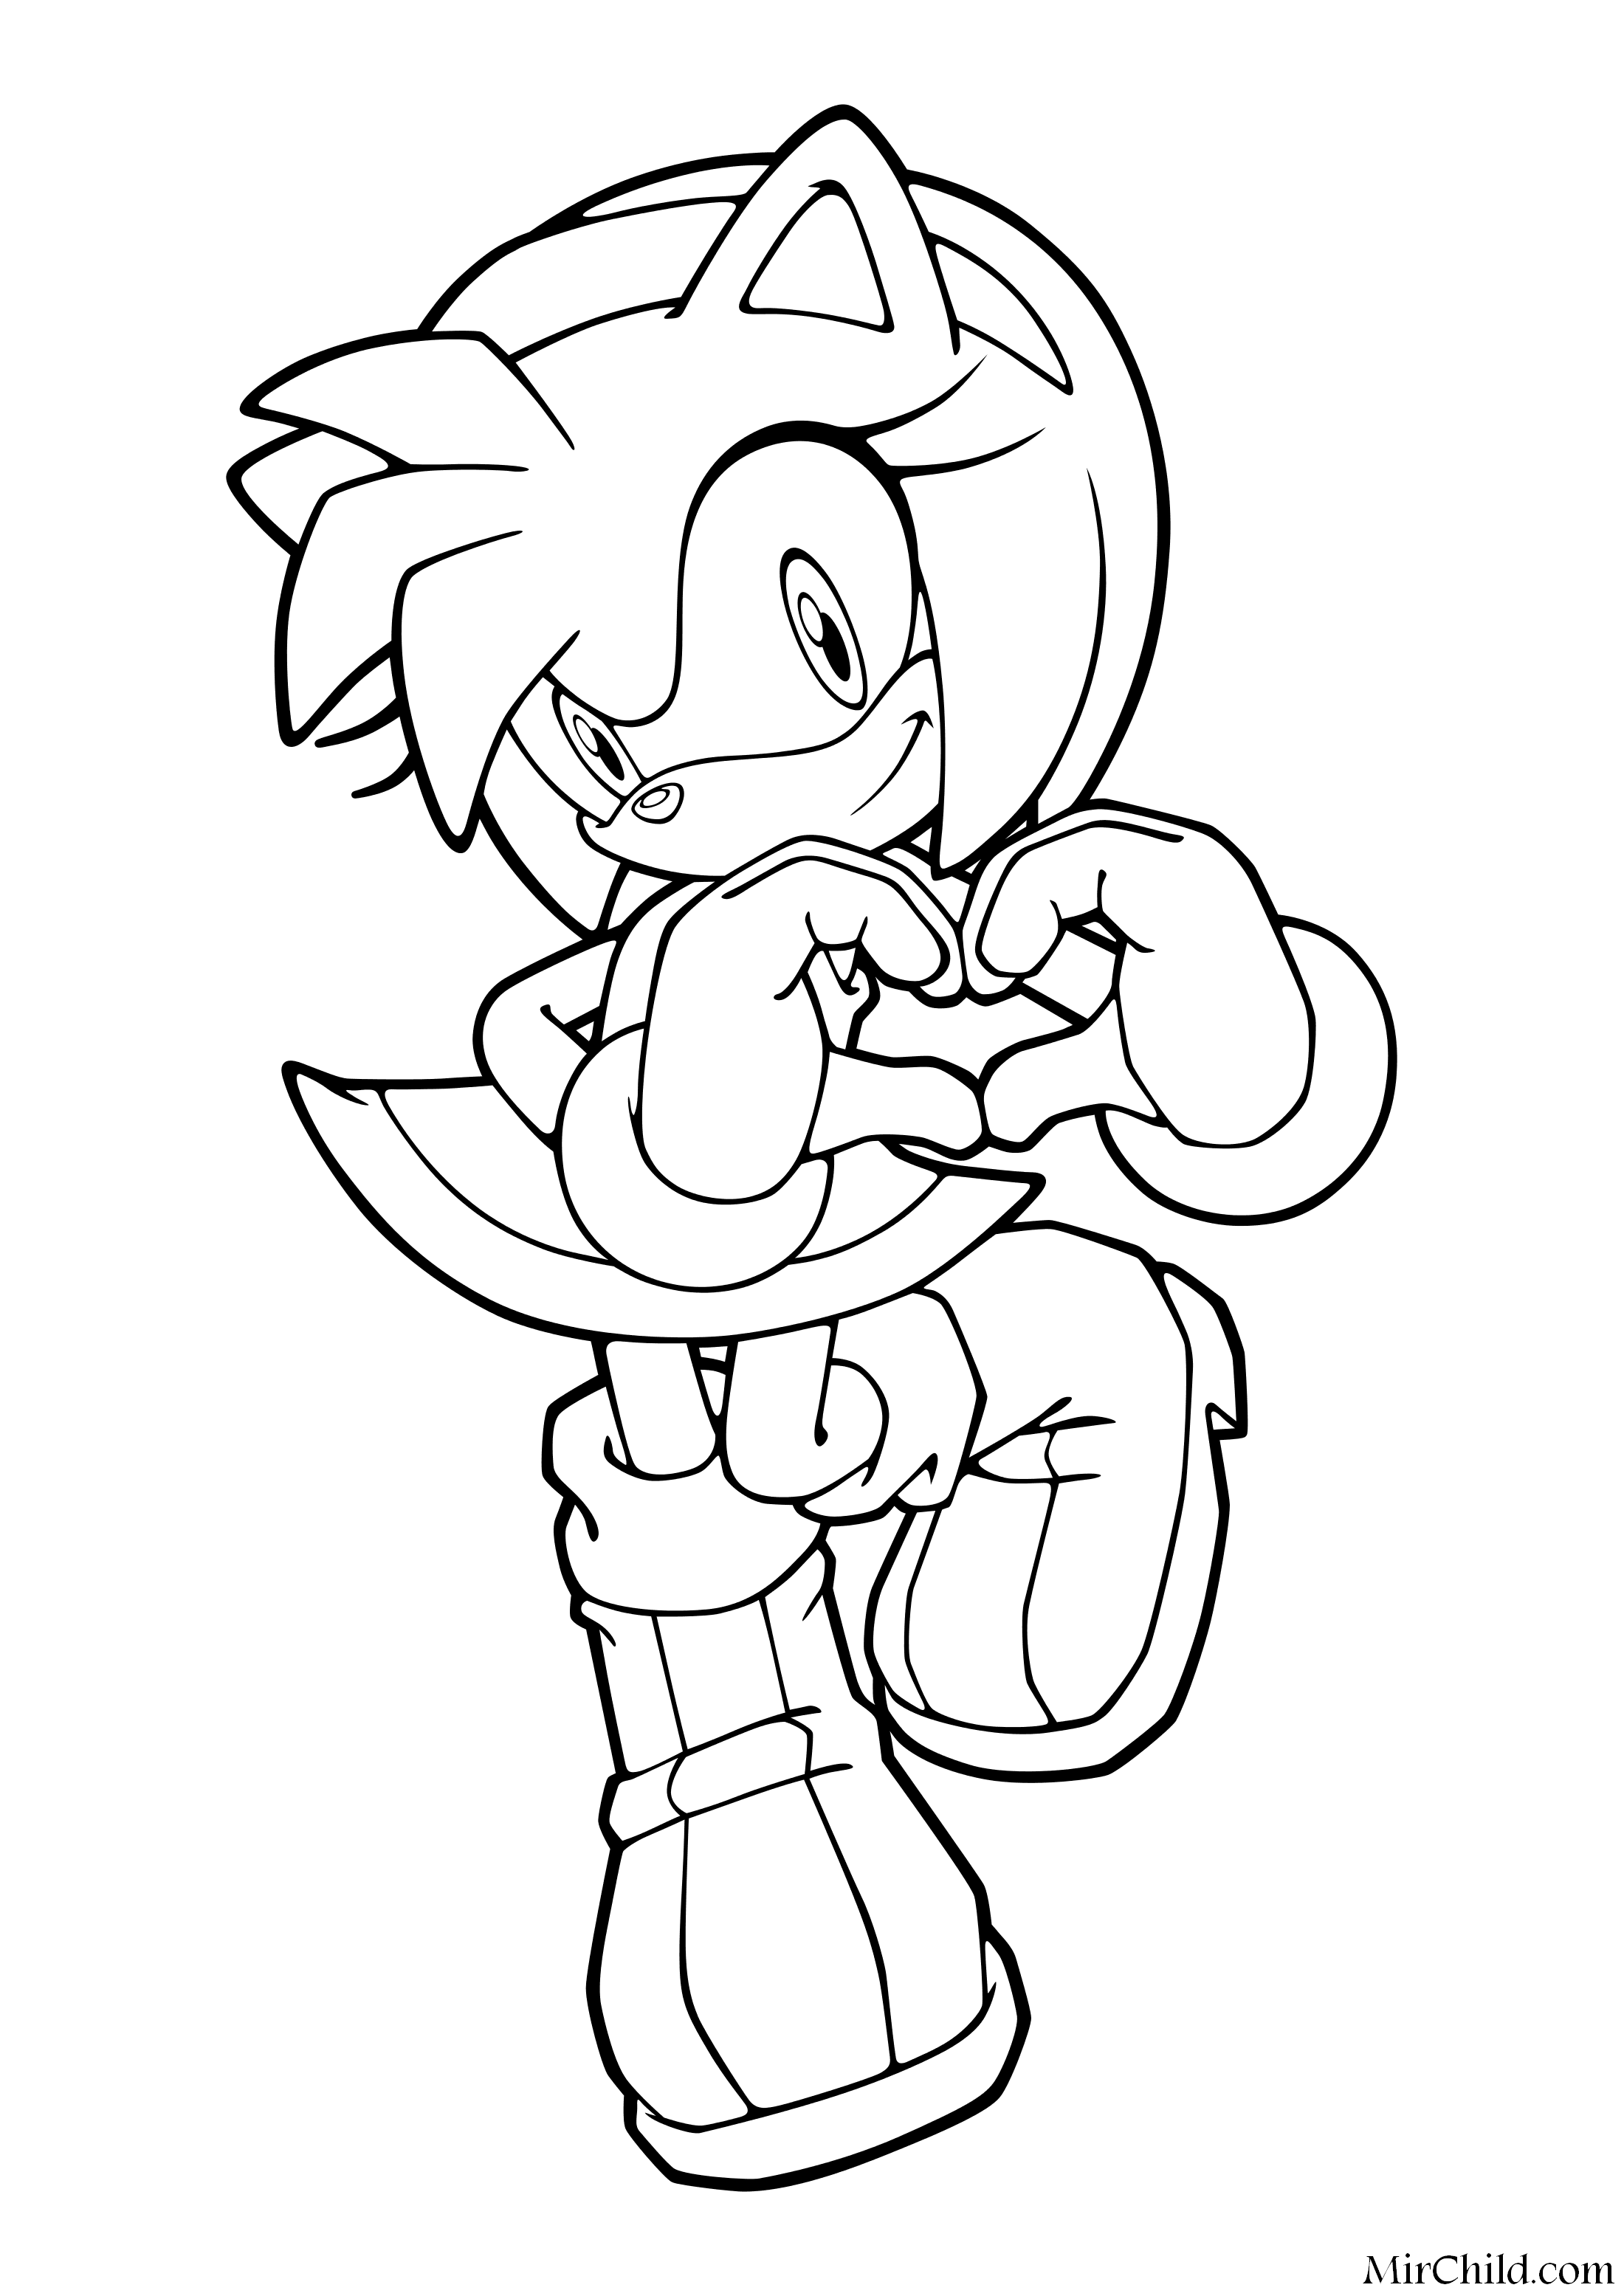 Раскраска - Sonic the Hedgehog - Эми Роуз показывает сердечко.